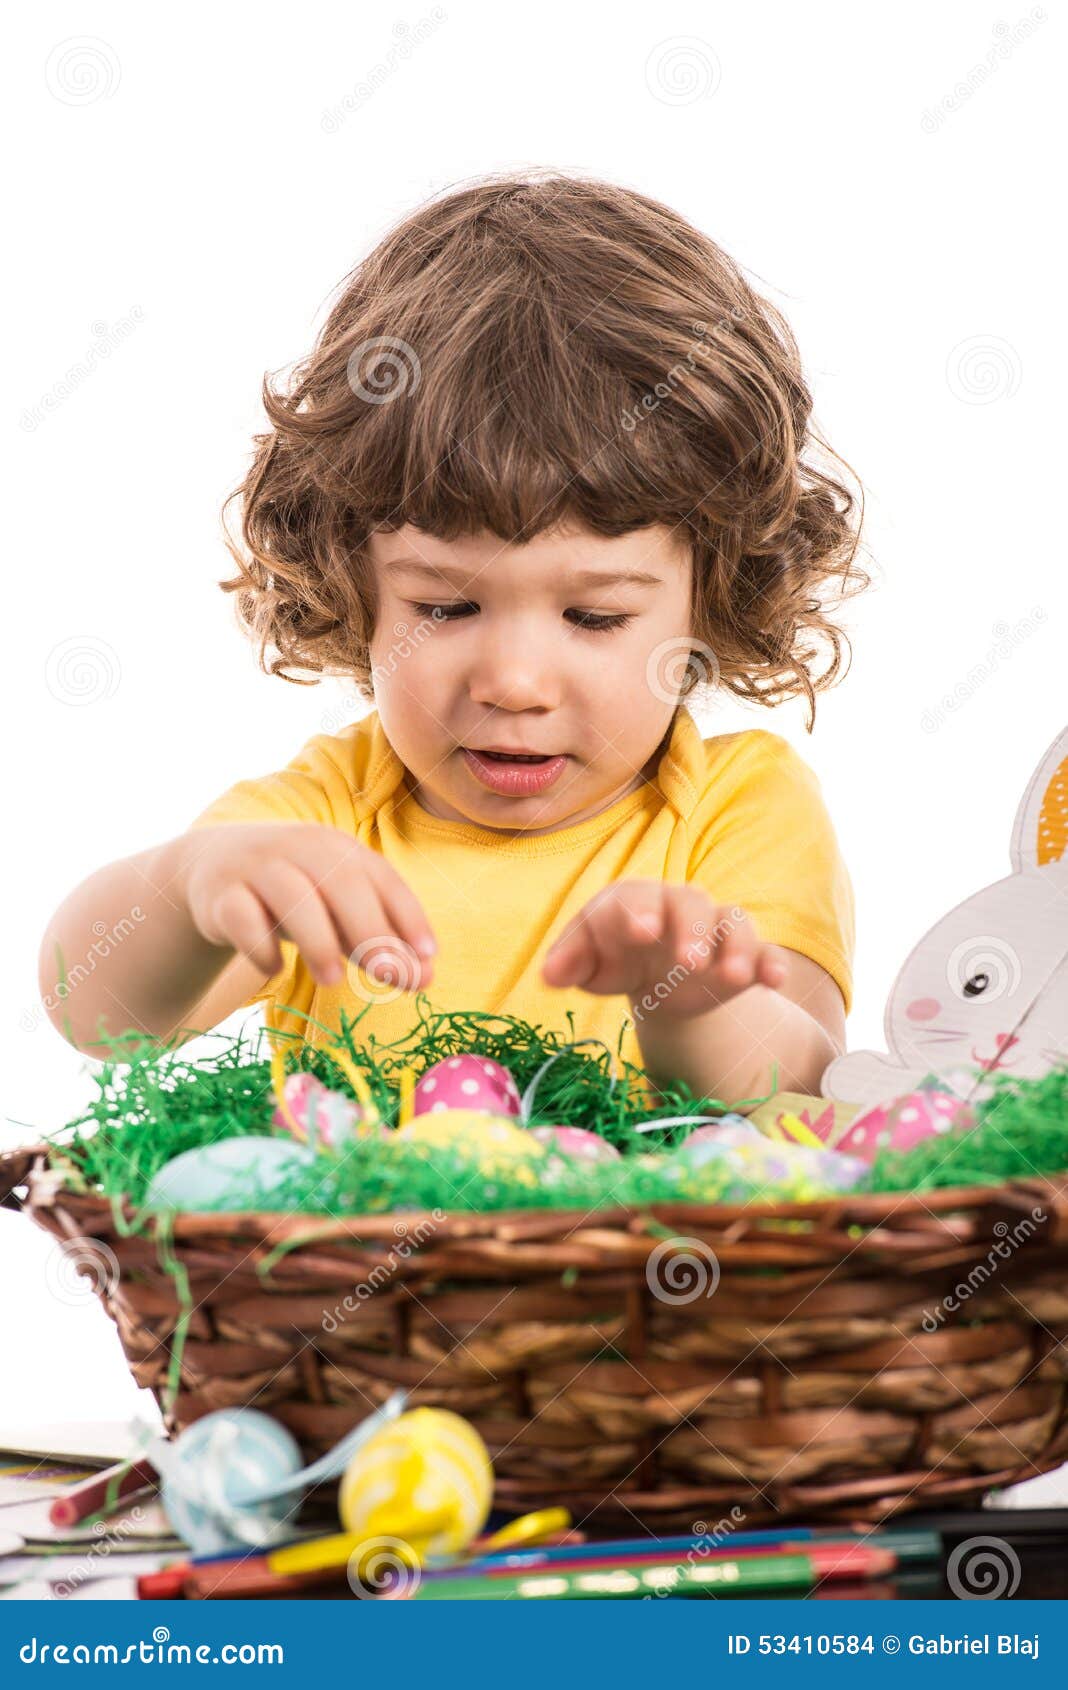 toddler boy arrange easter eggs in basket